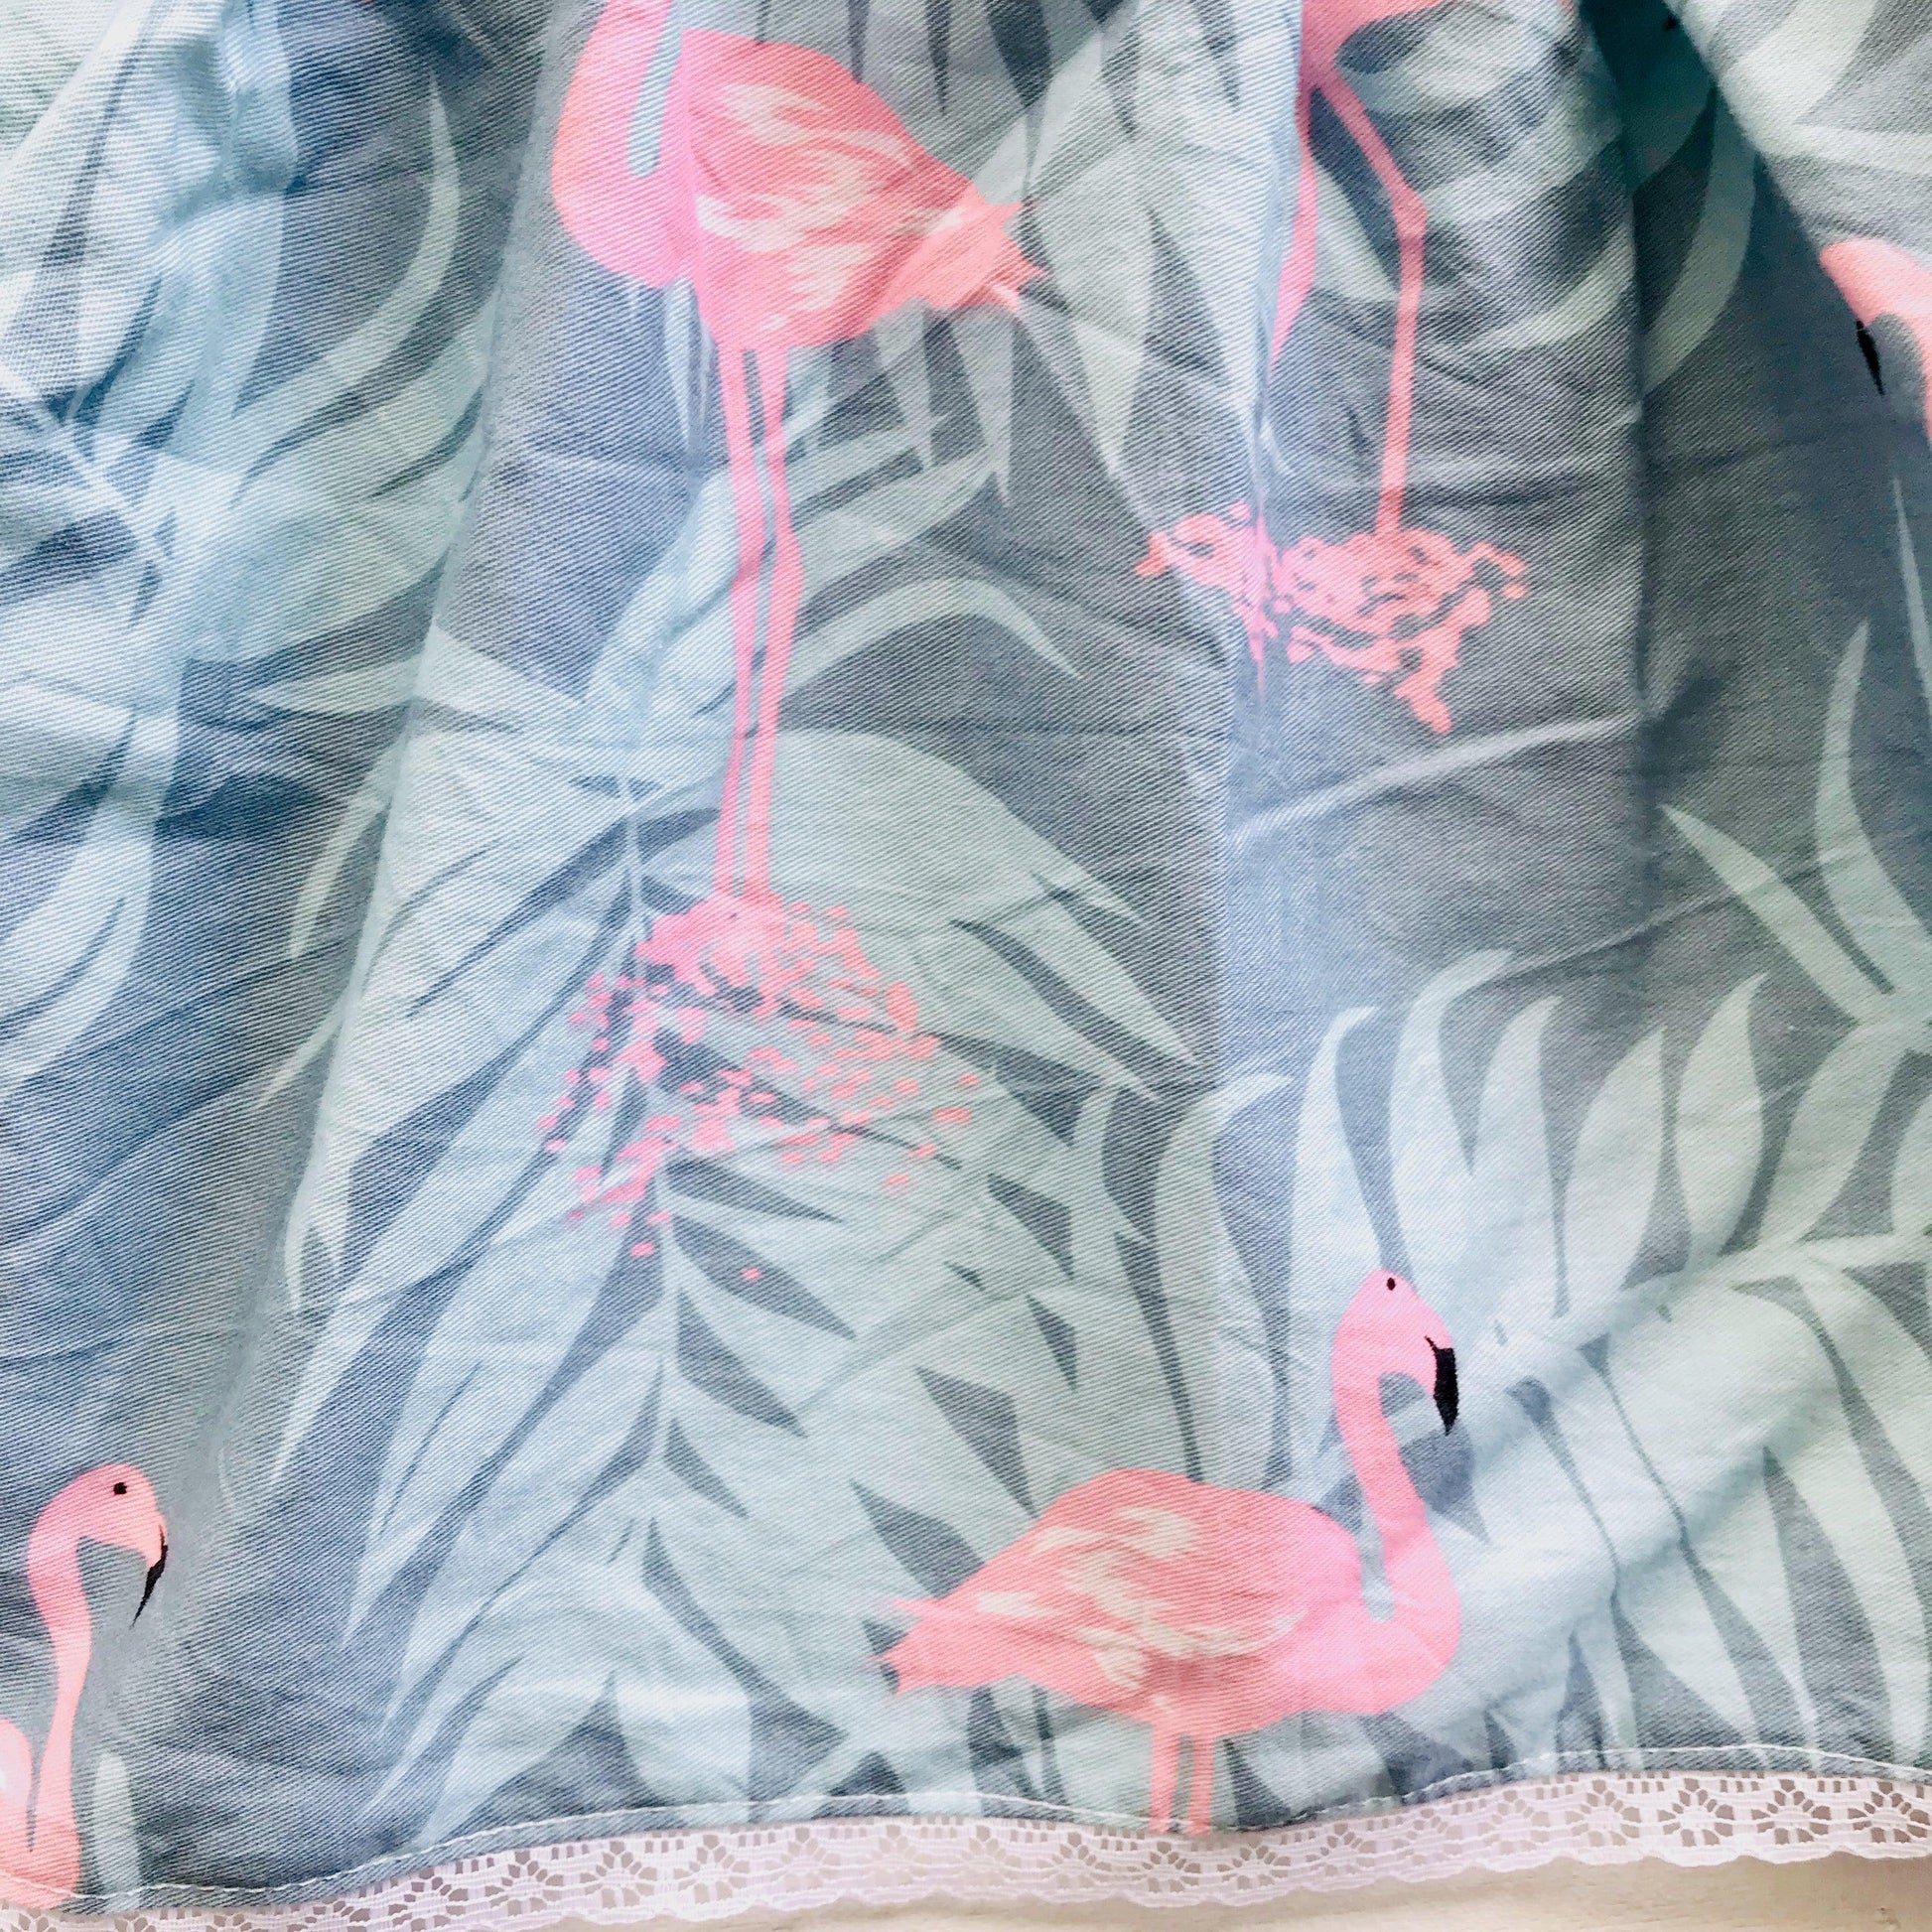 Iris Dress in Flamingo Summer - Blue - Lil' Tati